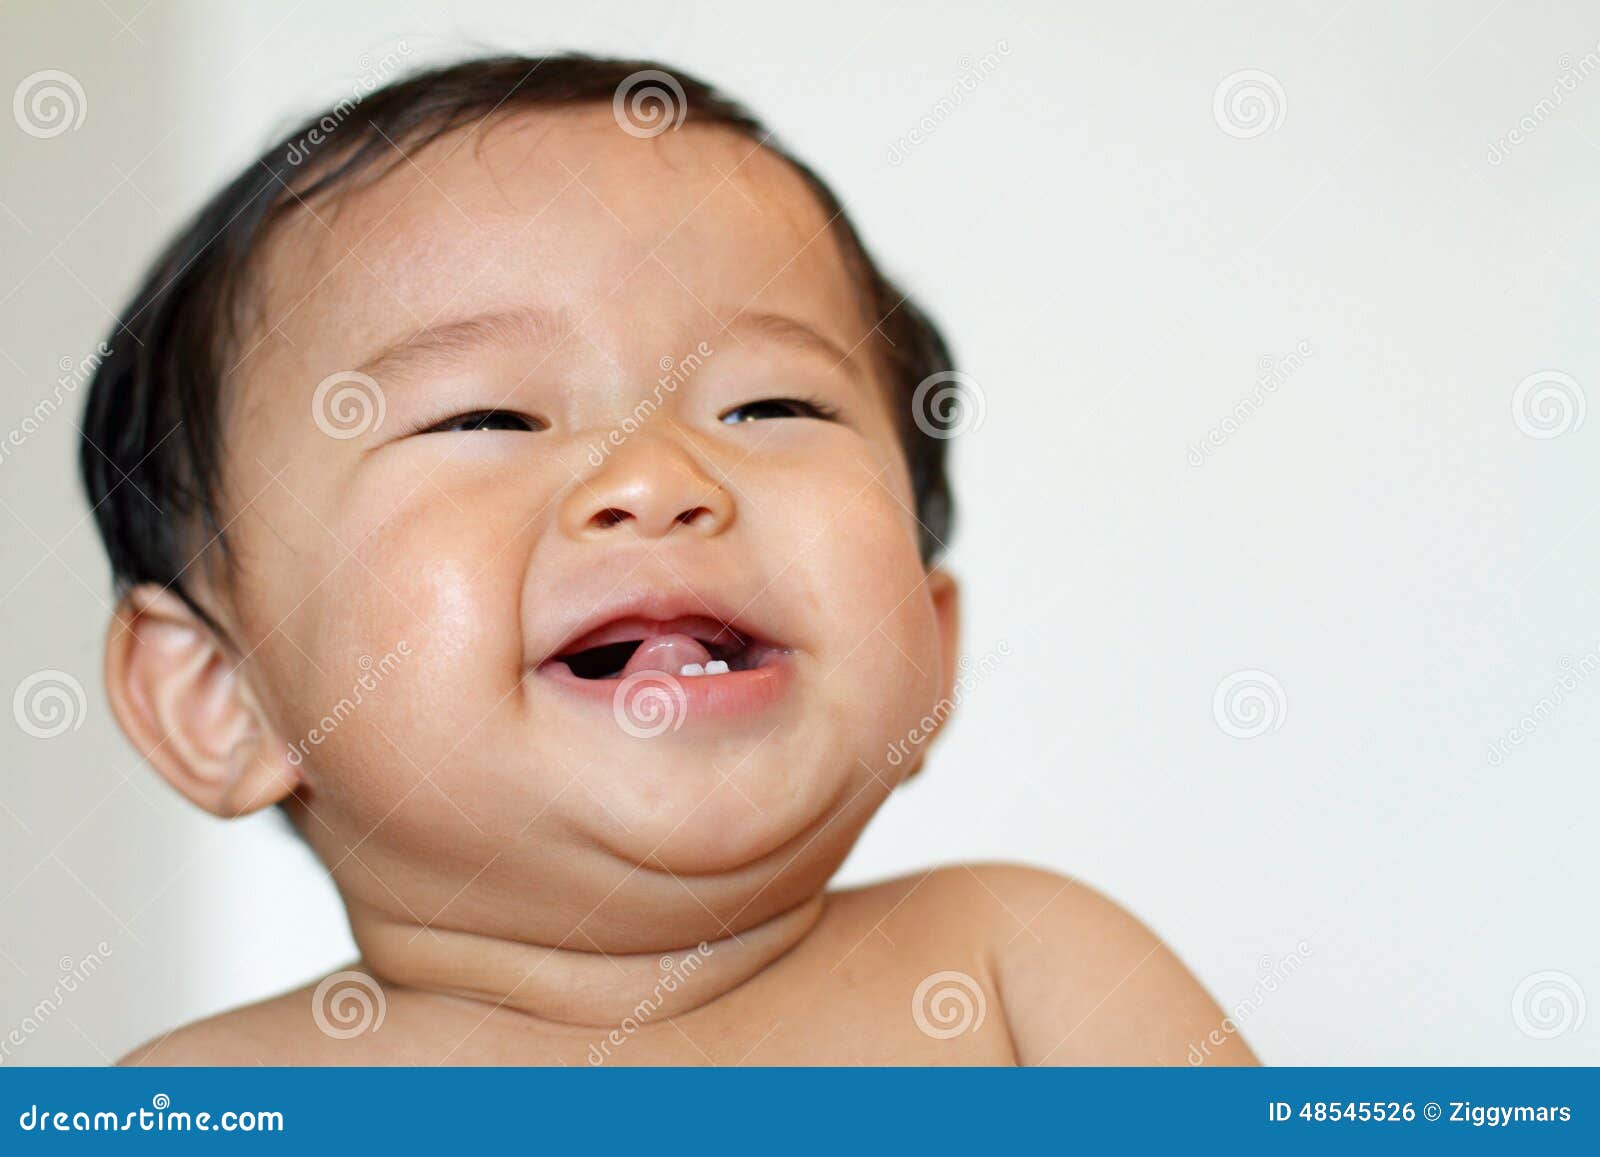 蓝眼睛的 6 个月男婴男婴肖像人像图片免费下载_jpg格式_3335像素_编号41552335-千图网